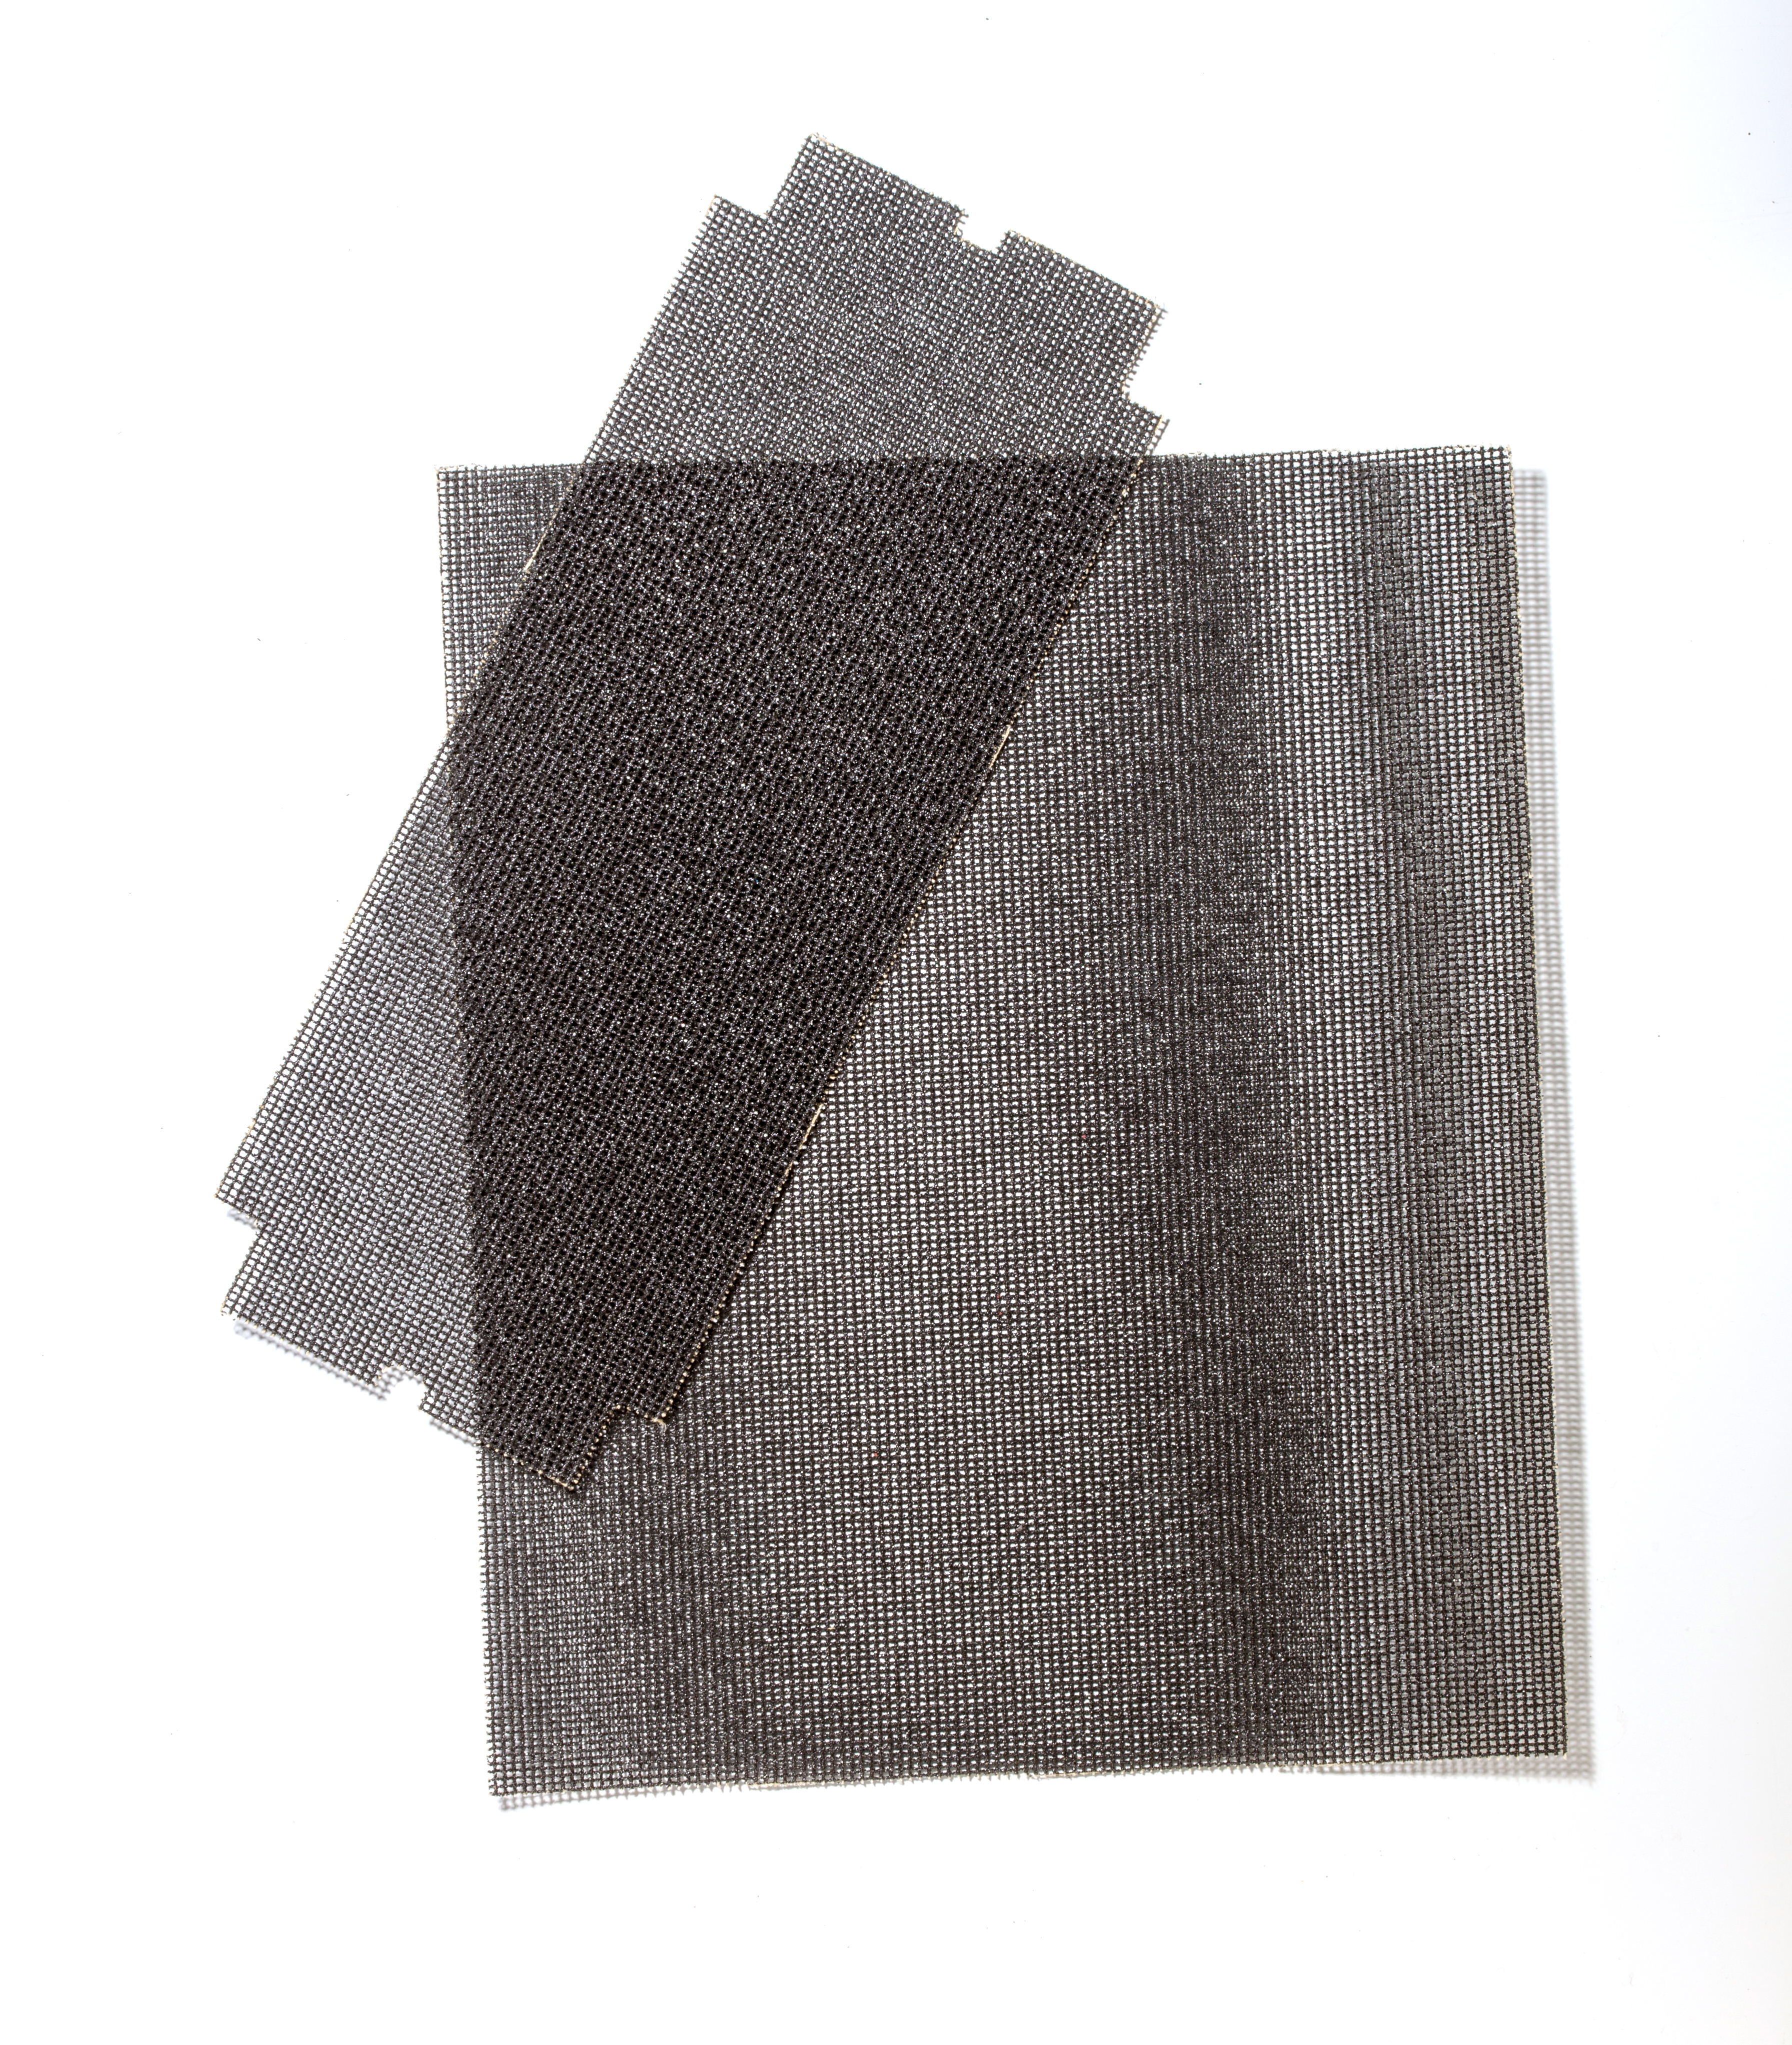 SAITSCREEN 4-3/16 X 11 220X - Sandpaper Sheets